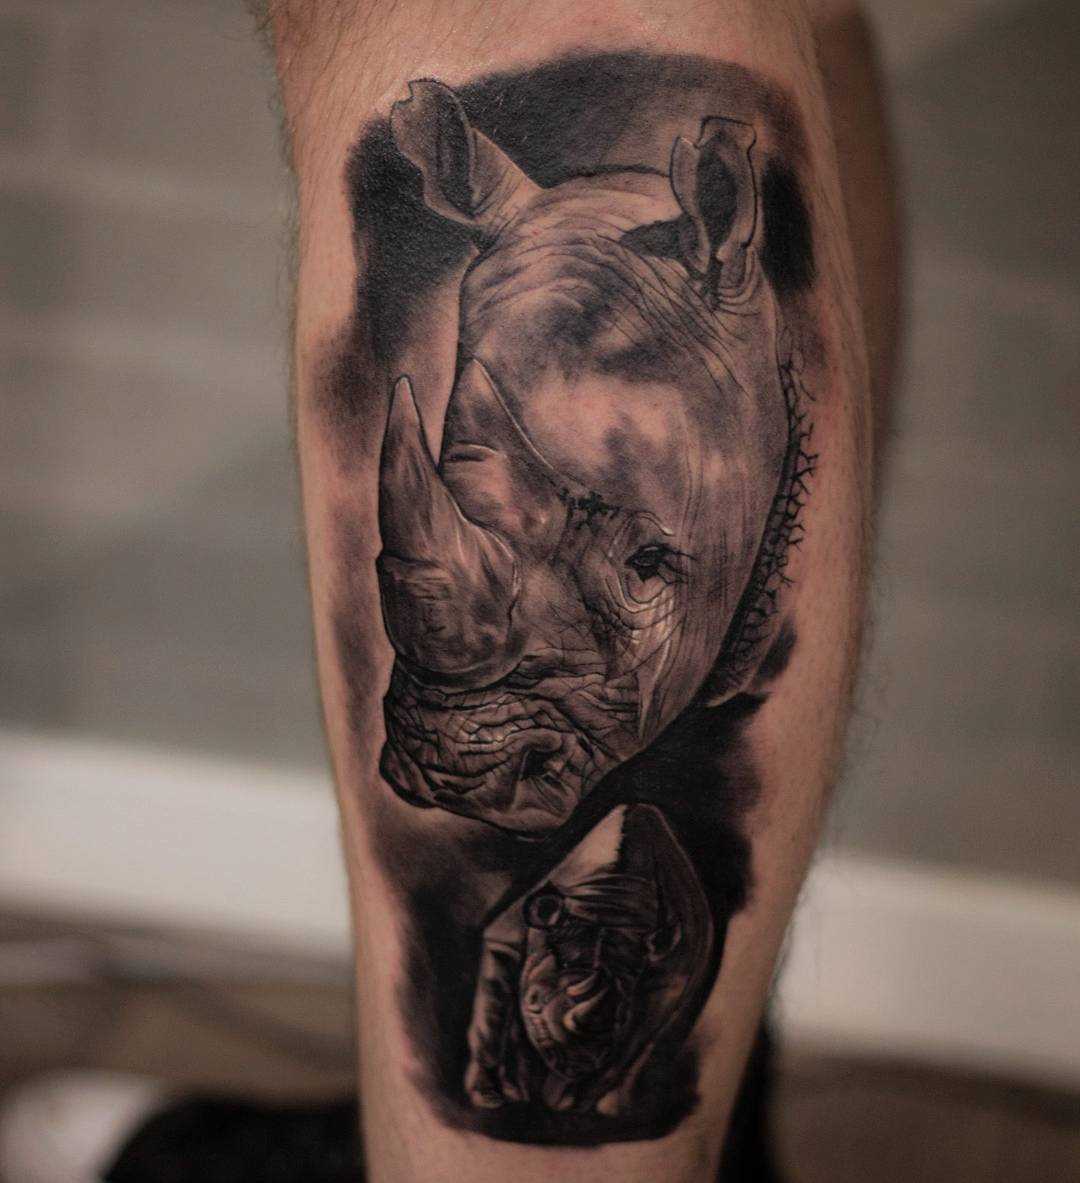 A tatuagem de rinocerontes sobre a perna de um cara